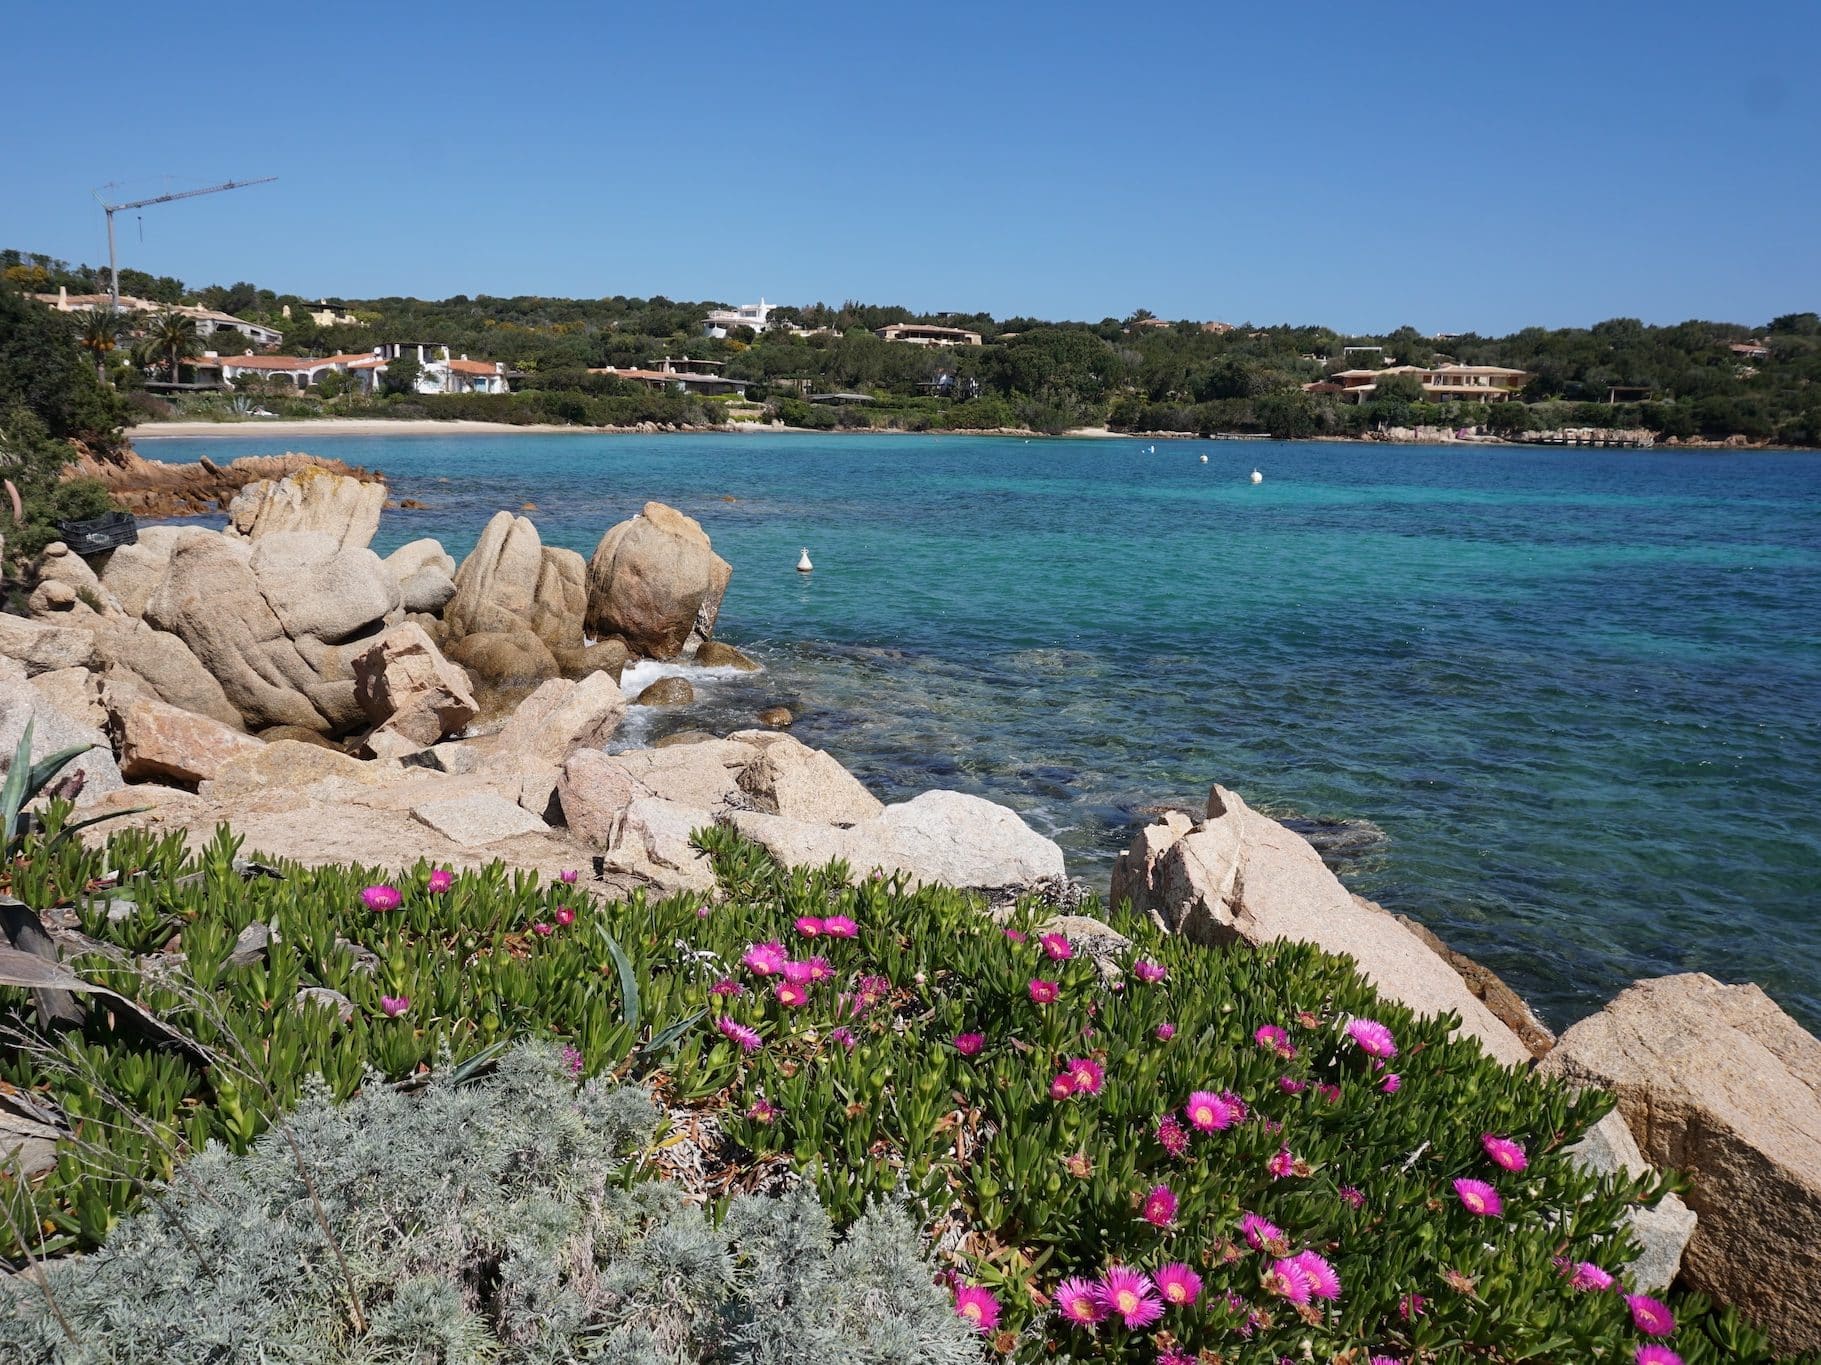 Sardinien er ideel til billige ferier – især i lavsæsonen kan du spare mange penge. Foto: Sascha Tegtmeyer Billig ferie - Tips - Book billige rejser